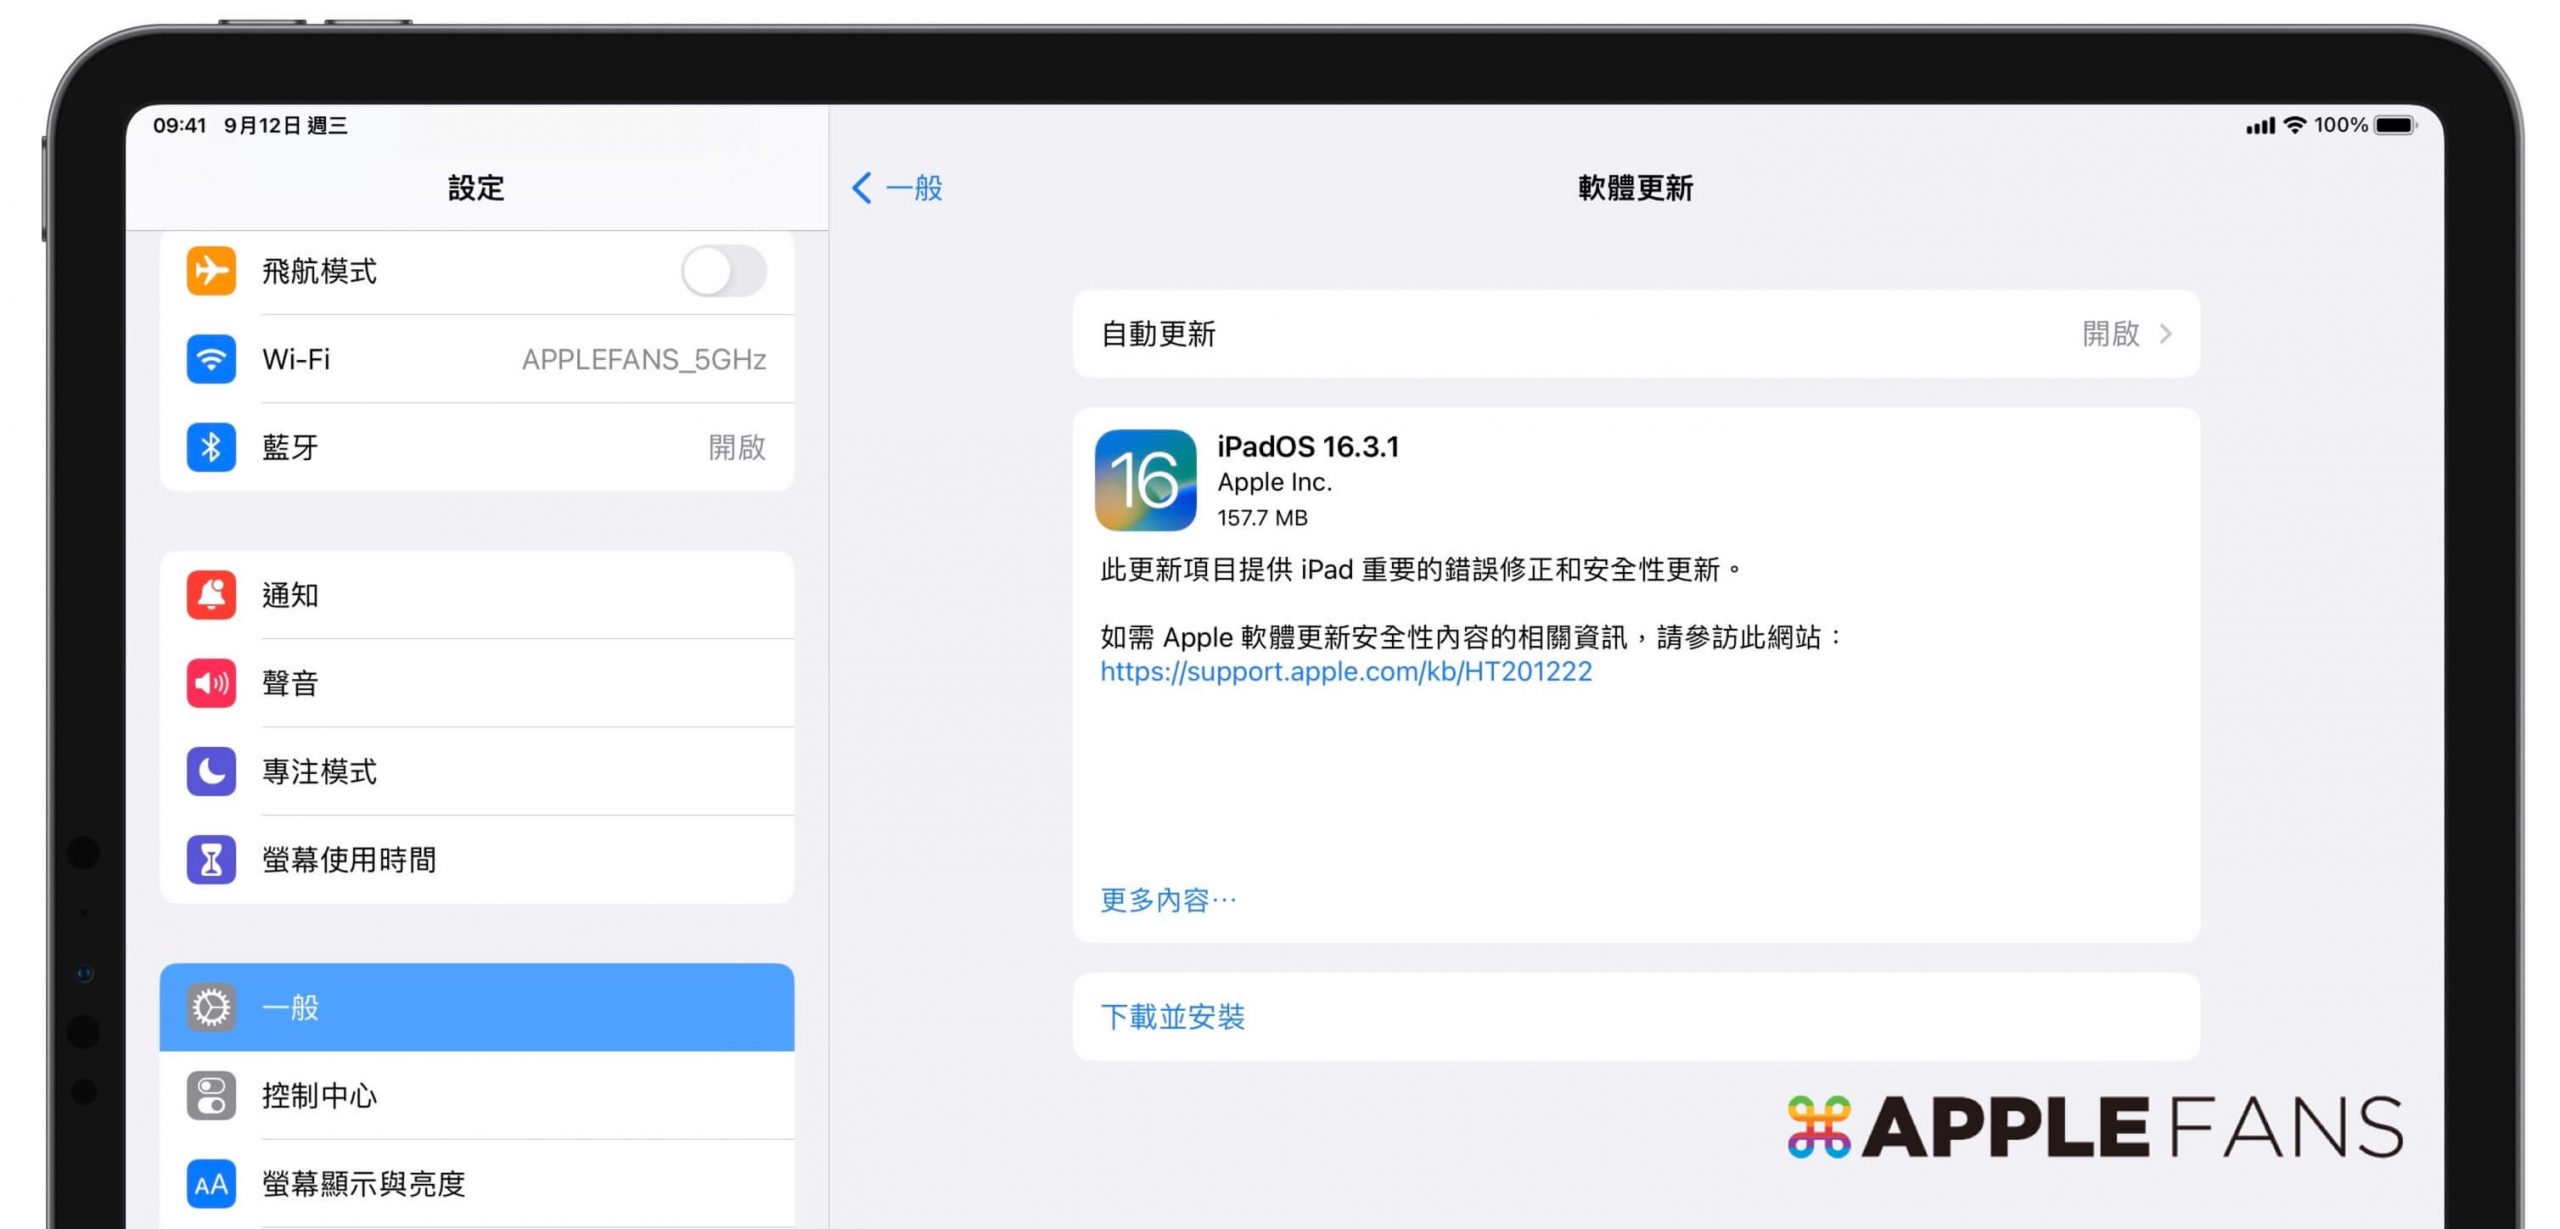 iPadOS 16.3.1